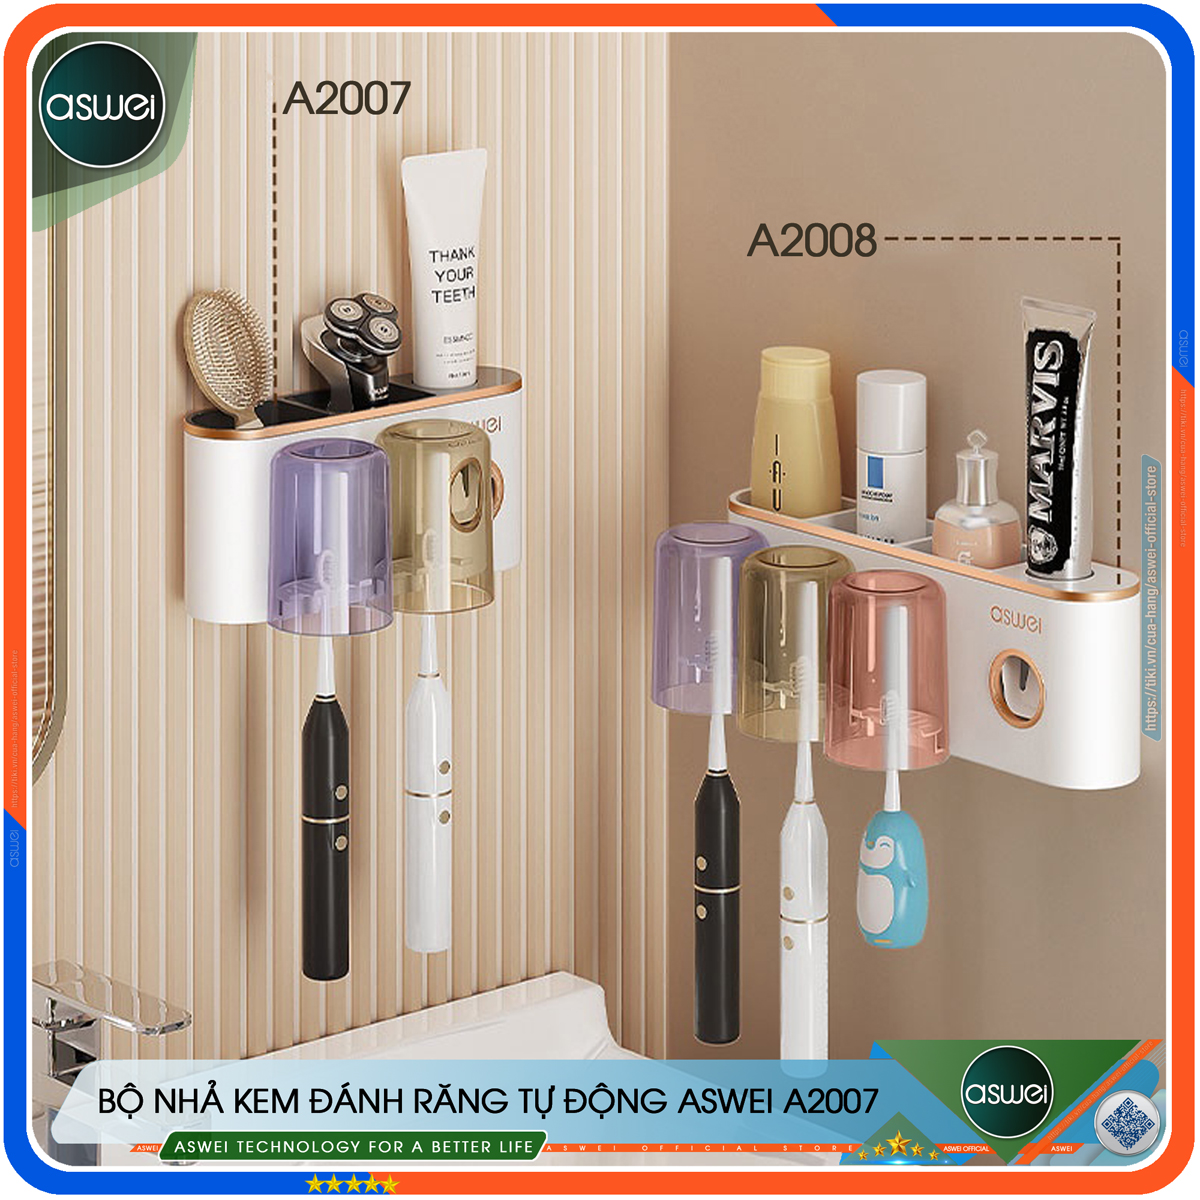 Hình ảnh Kệ nhà tắm ASWEI A2007, A2008, A2009 - Kệ để đồ nhà tắm dán tường tích hợp bộ nhả kem đánh răng 2, 3, 4 cốc - Giá treo bàn chải đánh răng - Chất liệu ABS, PS cao cấp - Hàng chính hãng